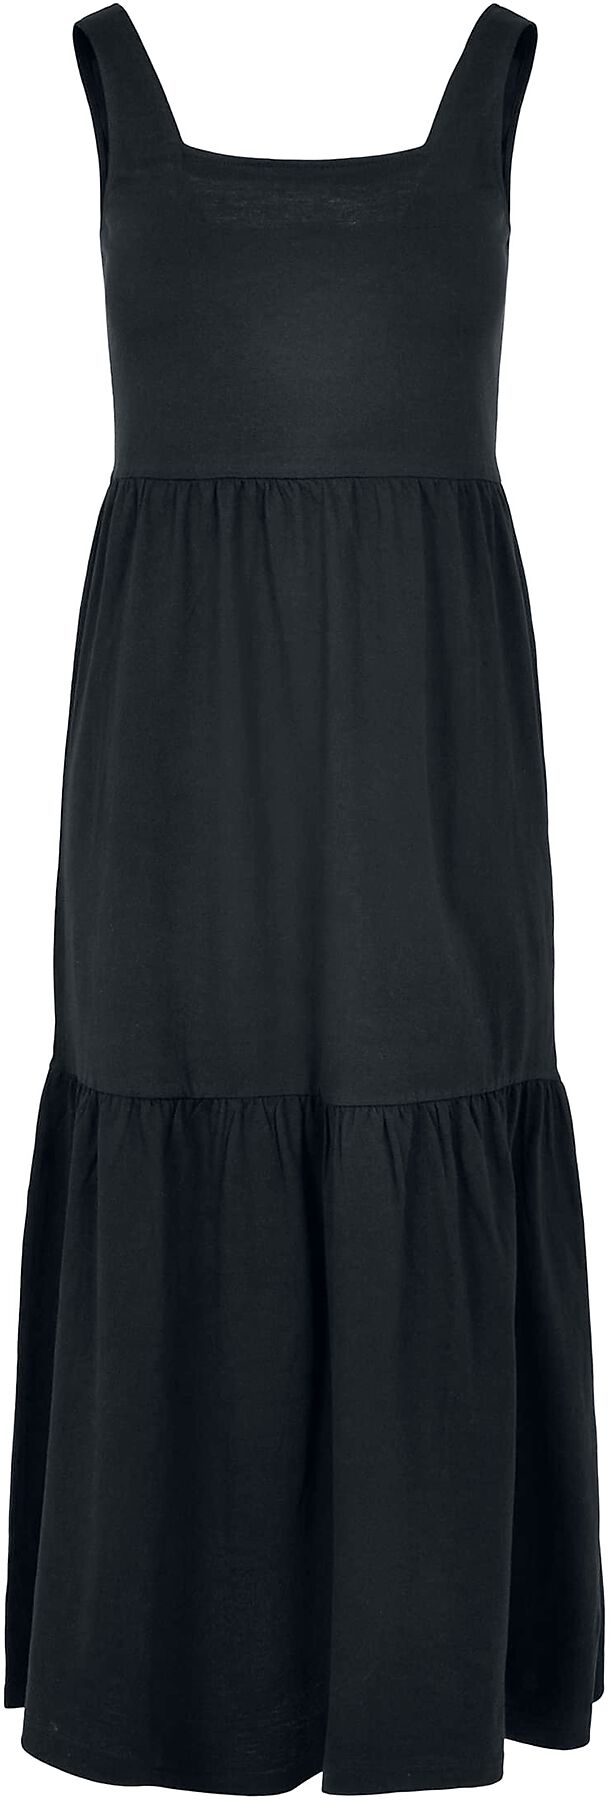 Urban Classics Kleid lang - Ladies Long Valance Summer Dress - XS bis 5XL - für Damen - Größe M - schwarz